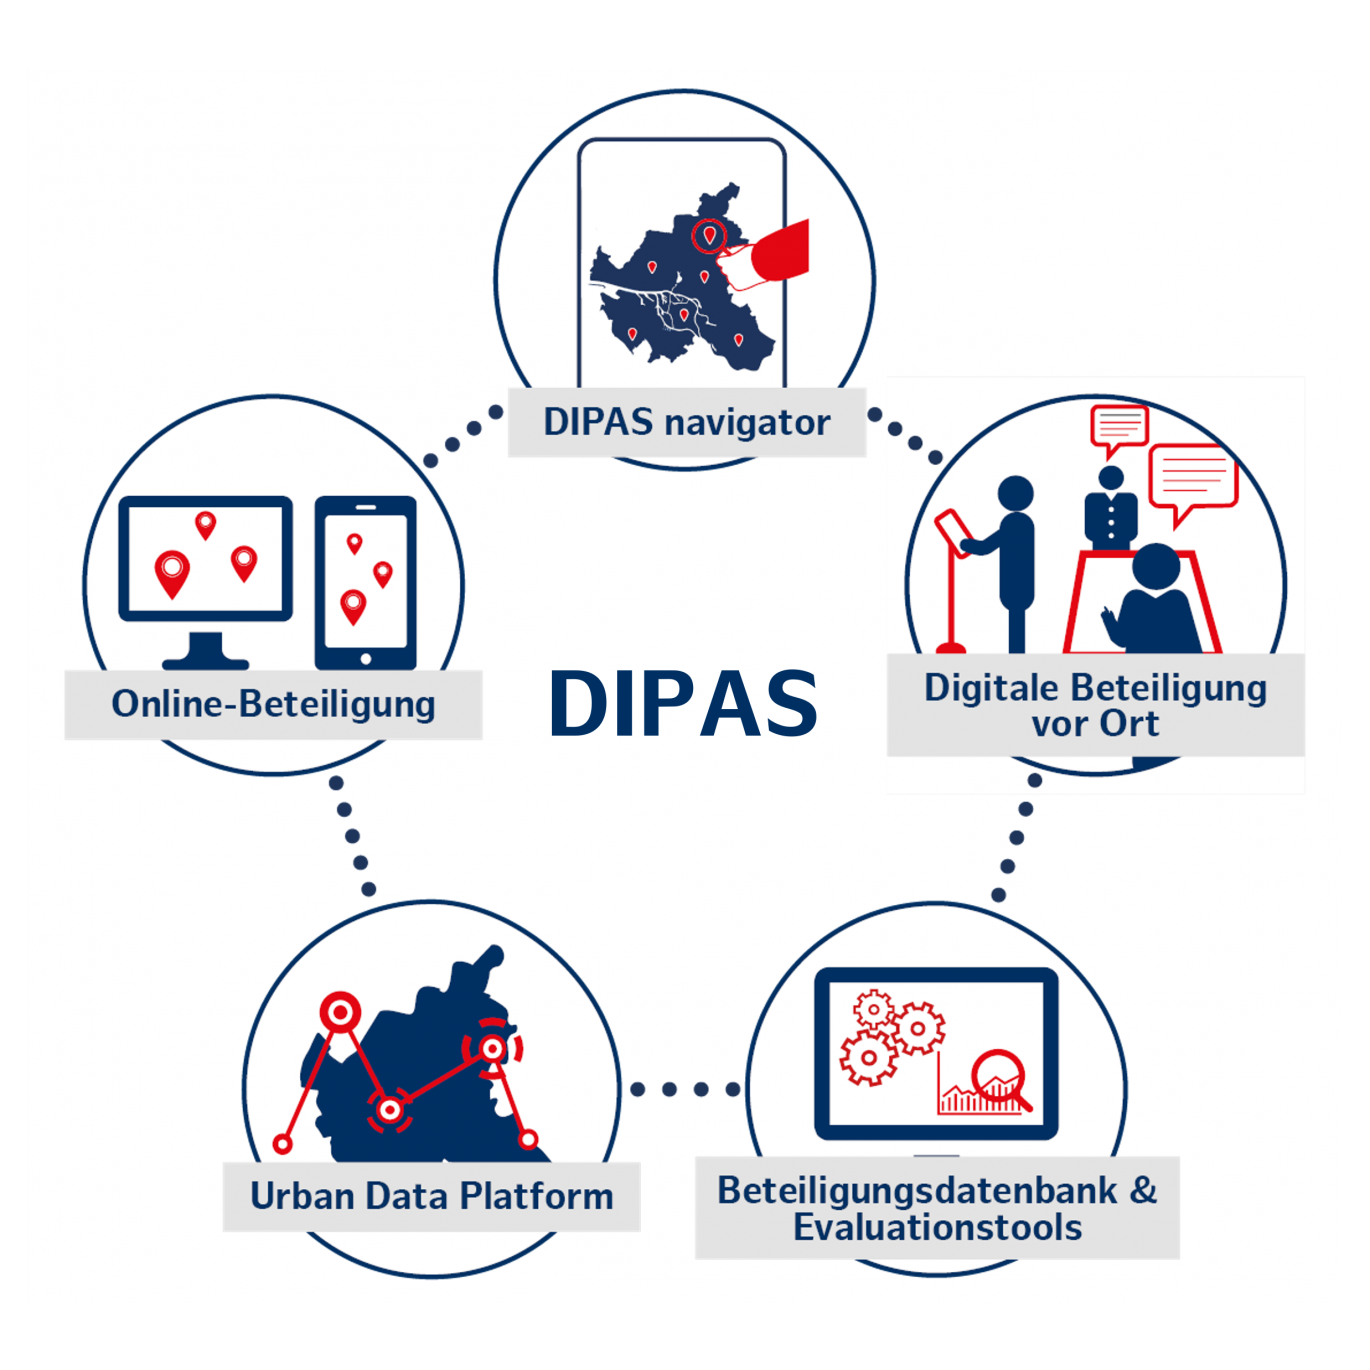 Fünf DIPAS Elemente: Urban Data Platform, Datenbank, Online-Tool, Touchtable und navigator